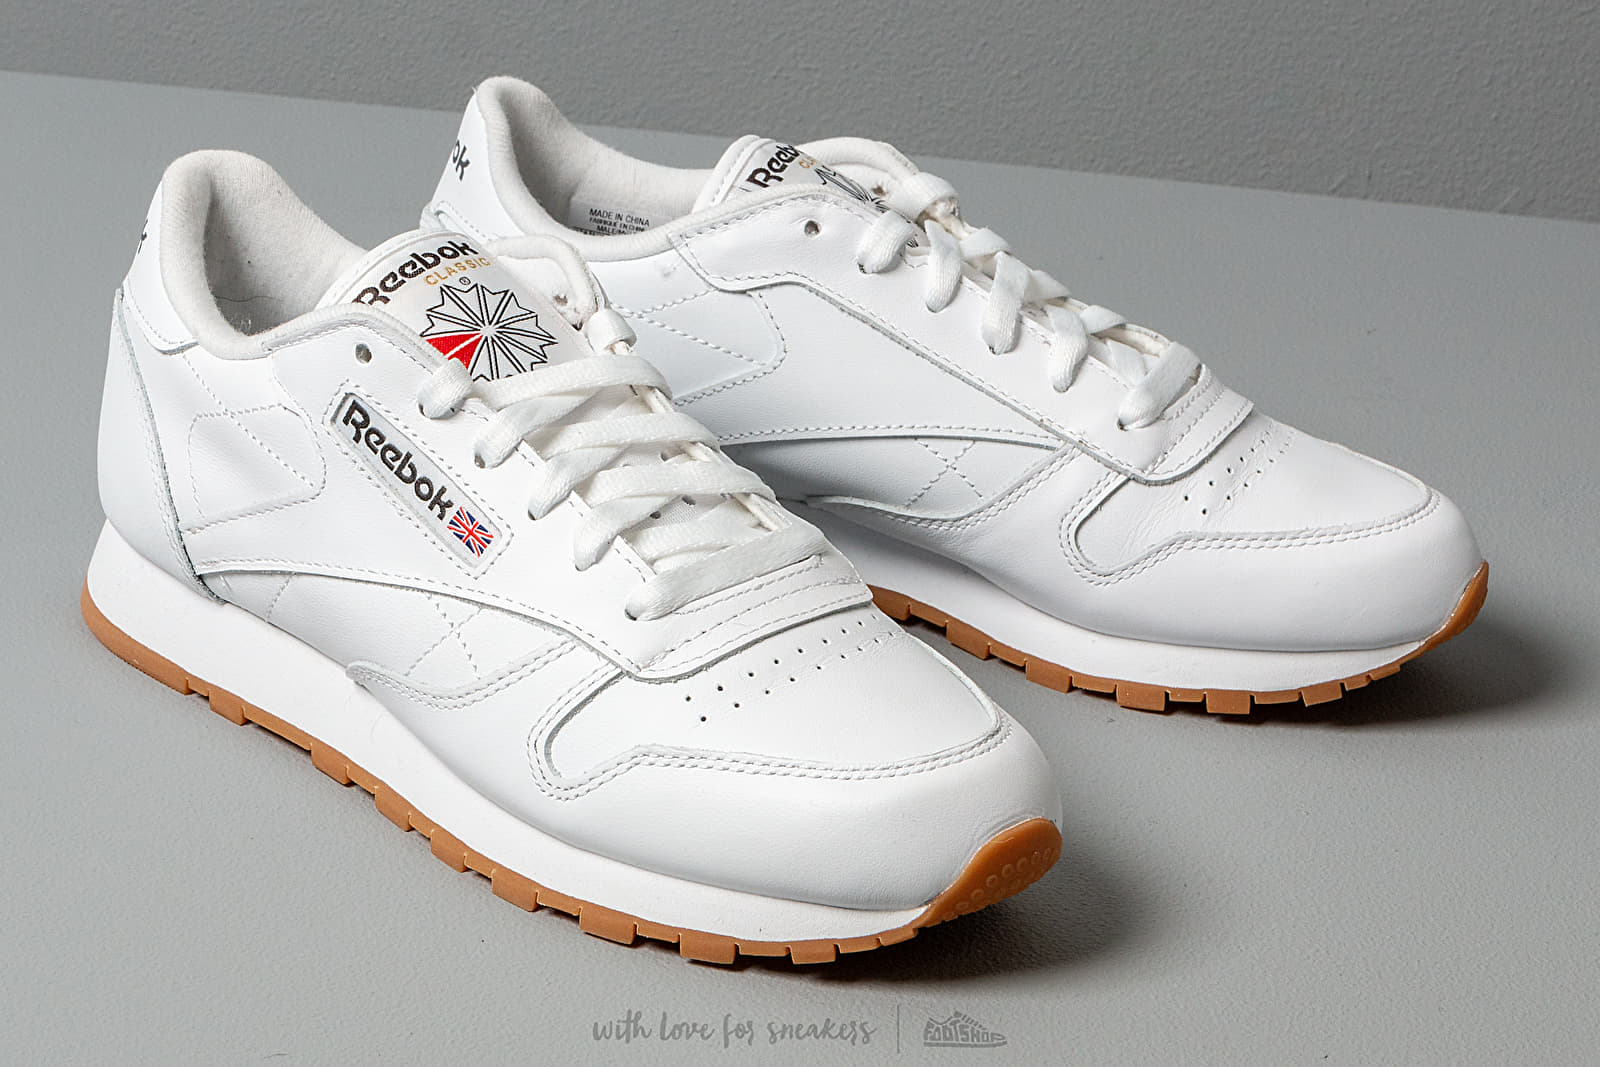 Leather Schuhe Classic | Footshop Gum und White/ Sneaker Herren Reebok